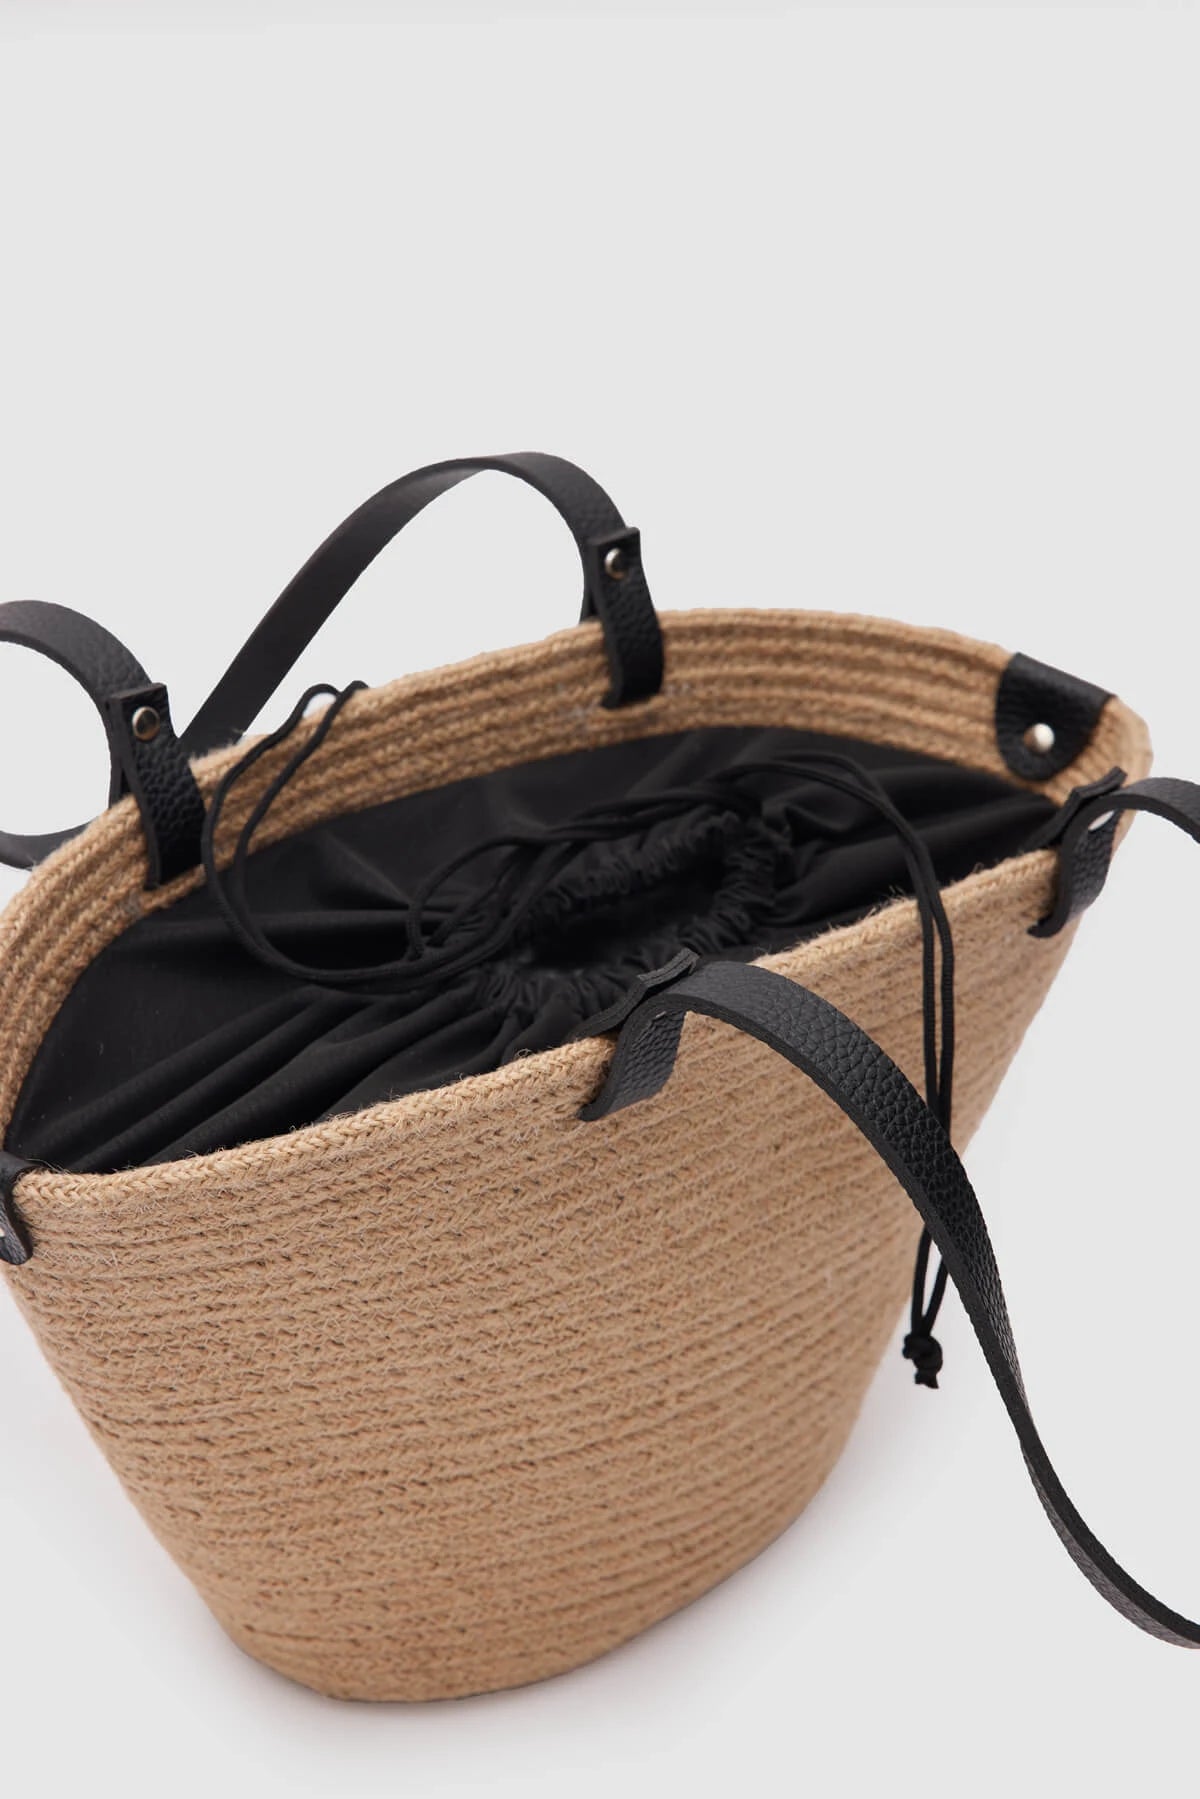 Straw Black Shopper Bag straw bags LUNARITY GARAGE   